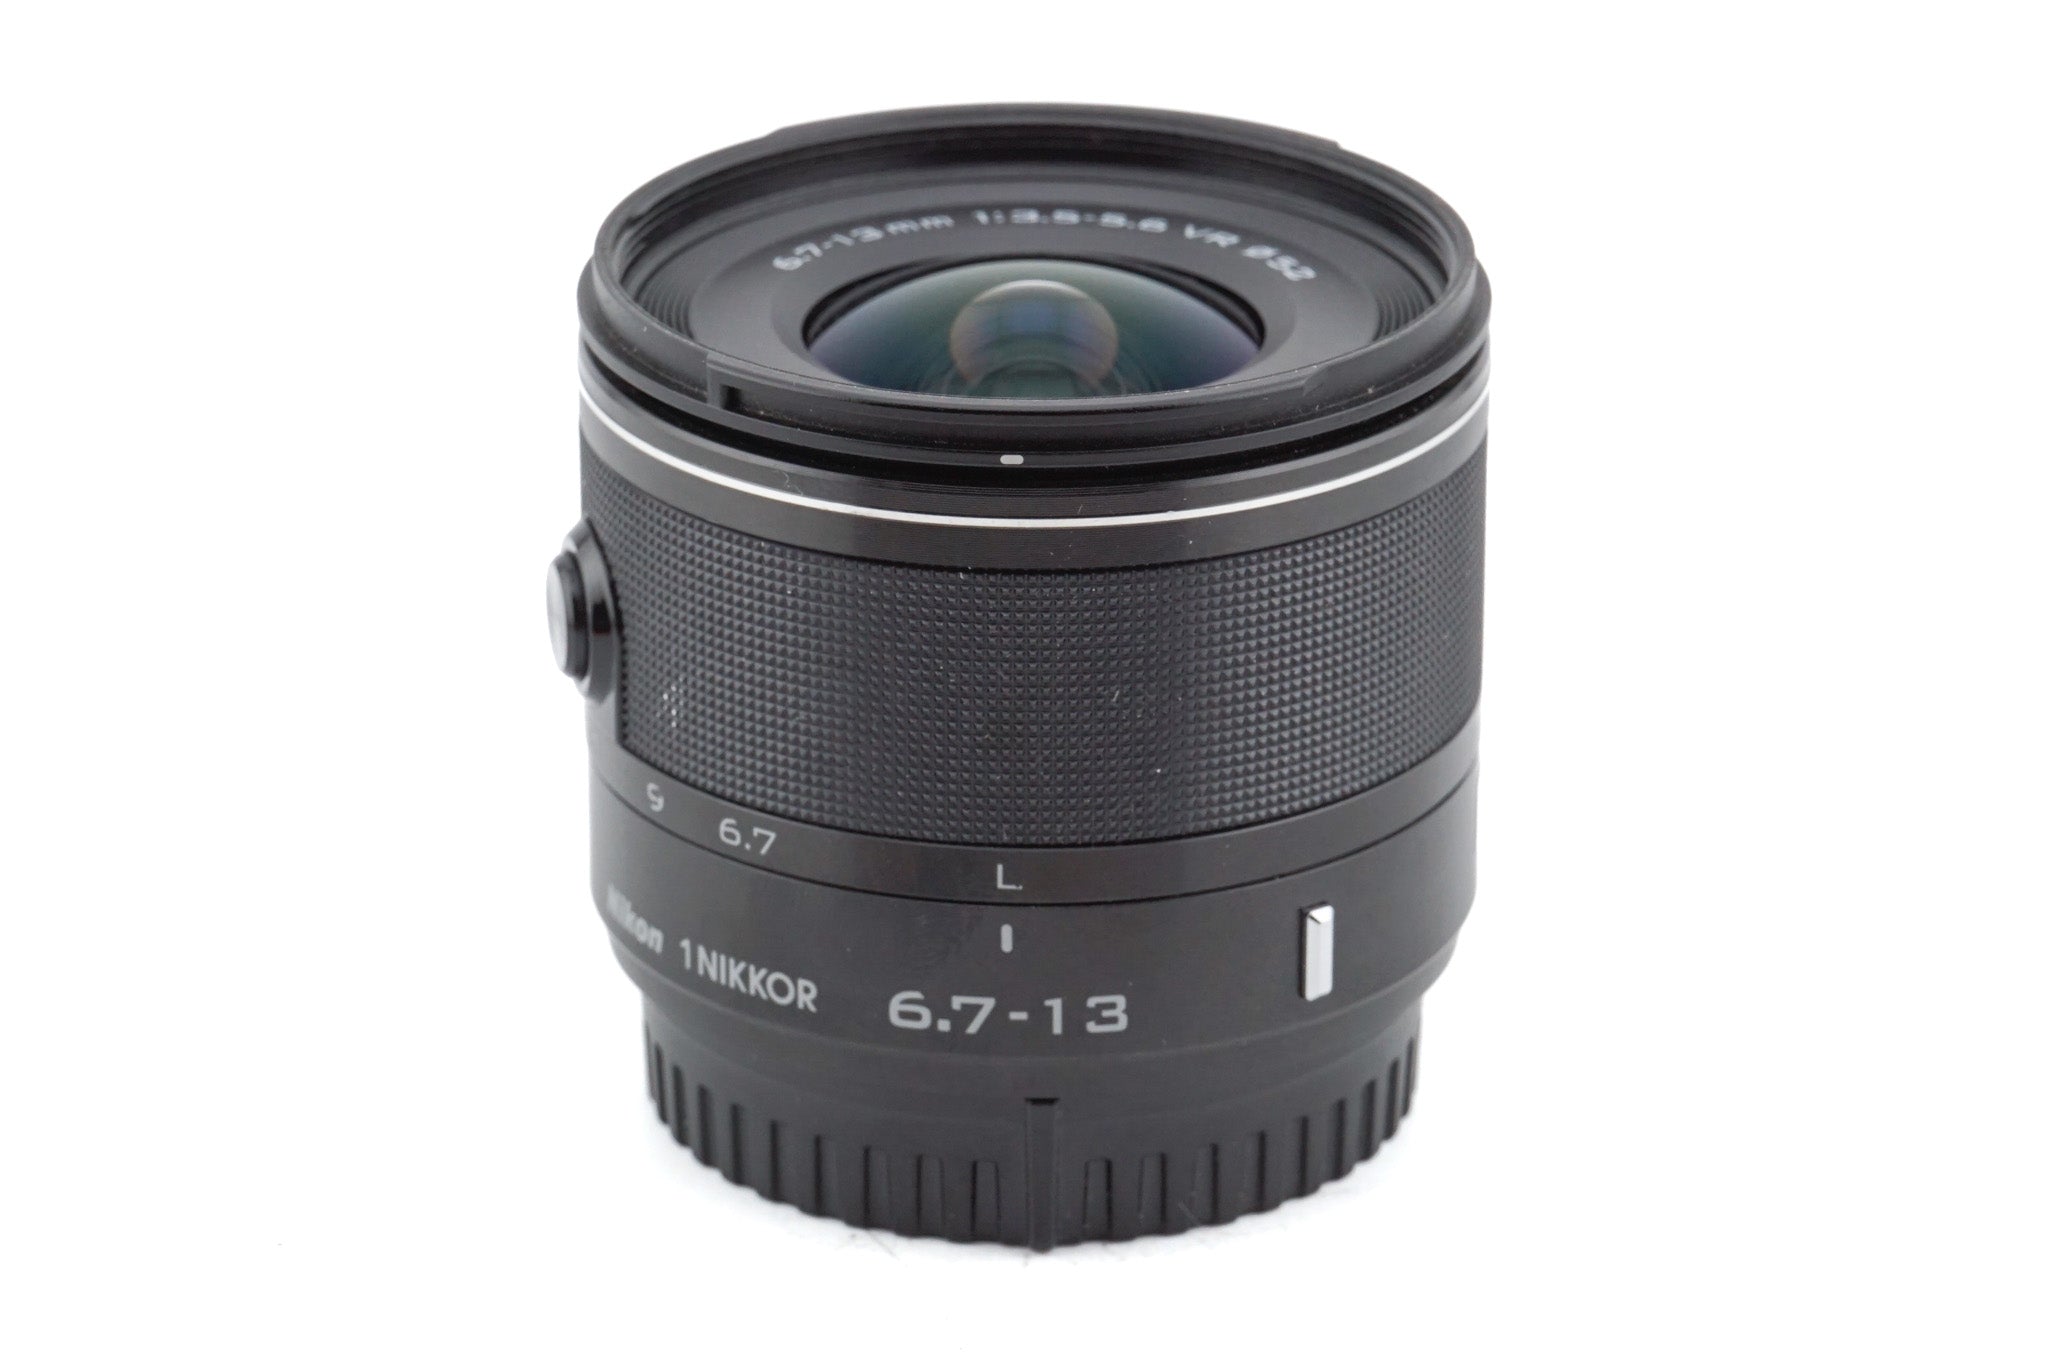 Nikon 6.7-13mm f3.5-5.6 1 Nikkor VR – Kamerastore